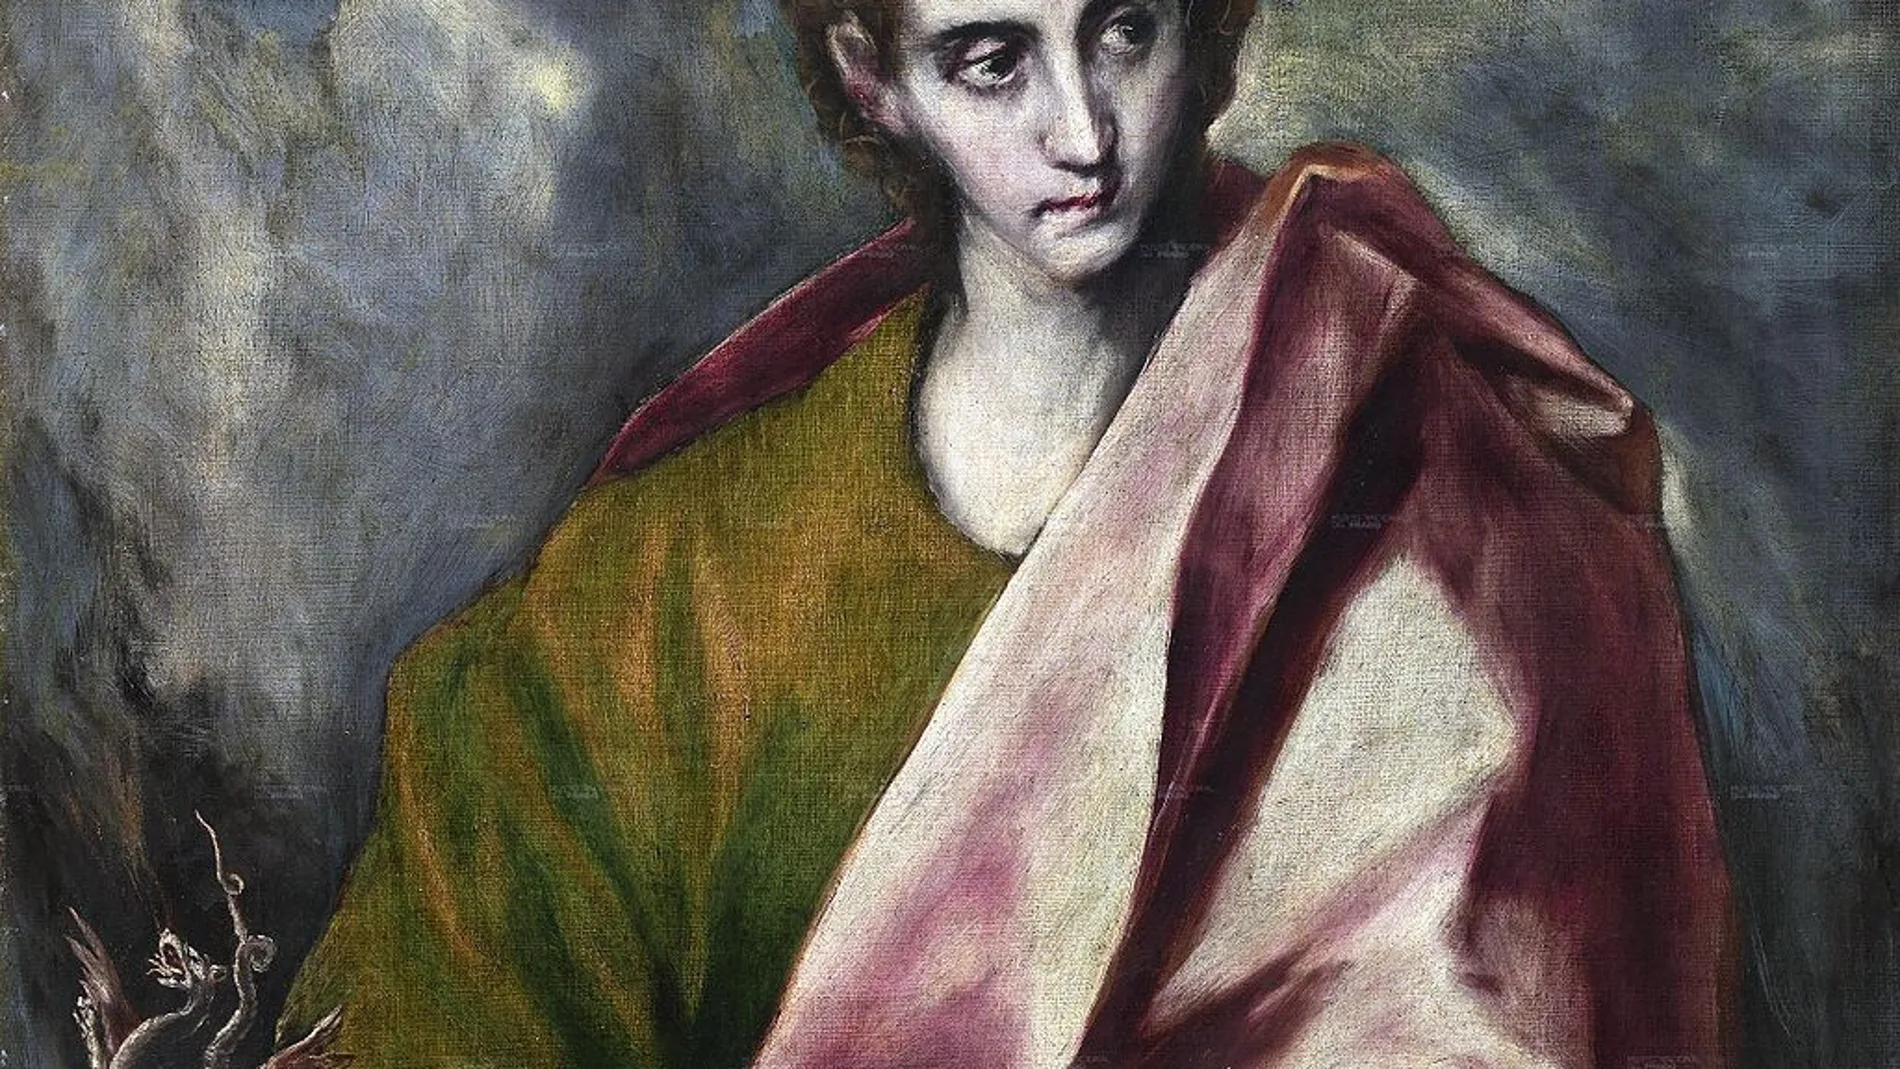 Obra de El Greco, que representa al apóstol San Juan Evangelista